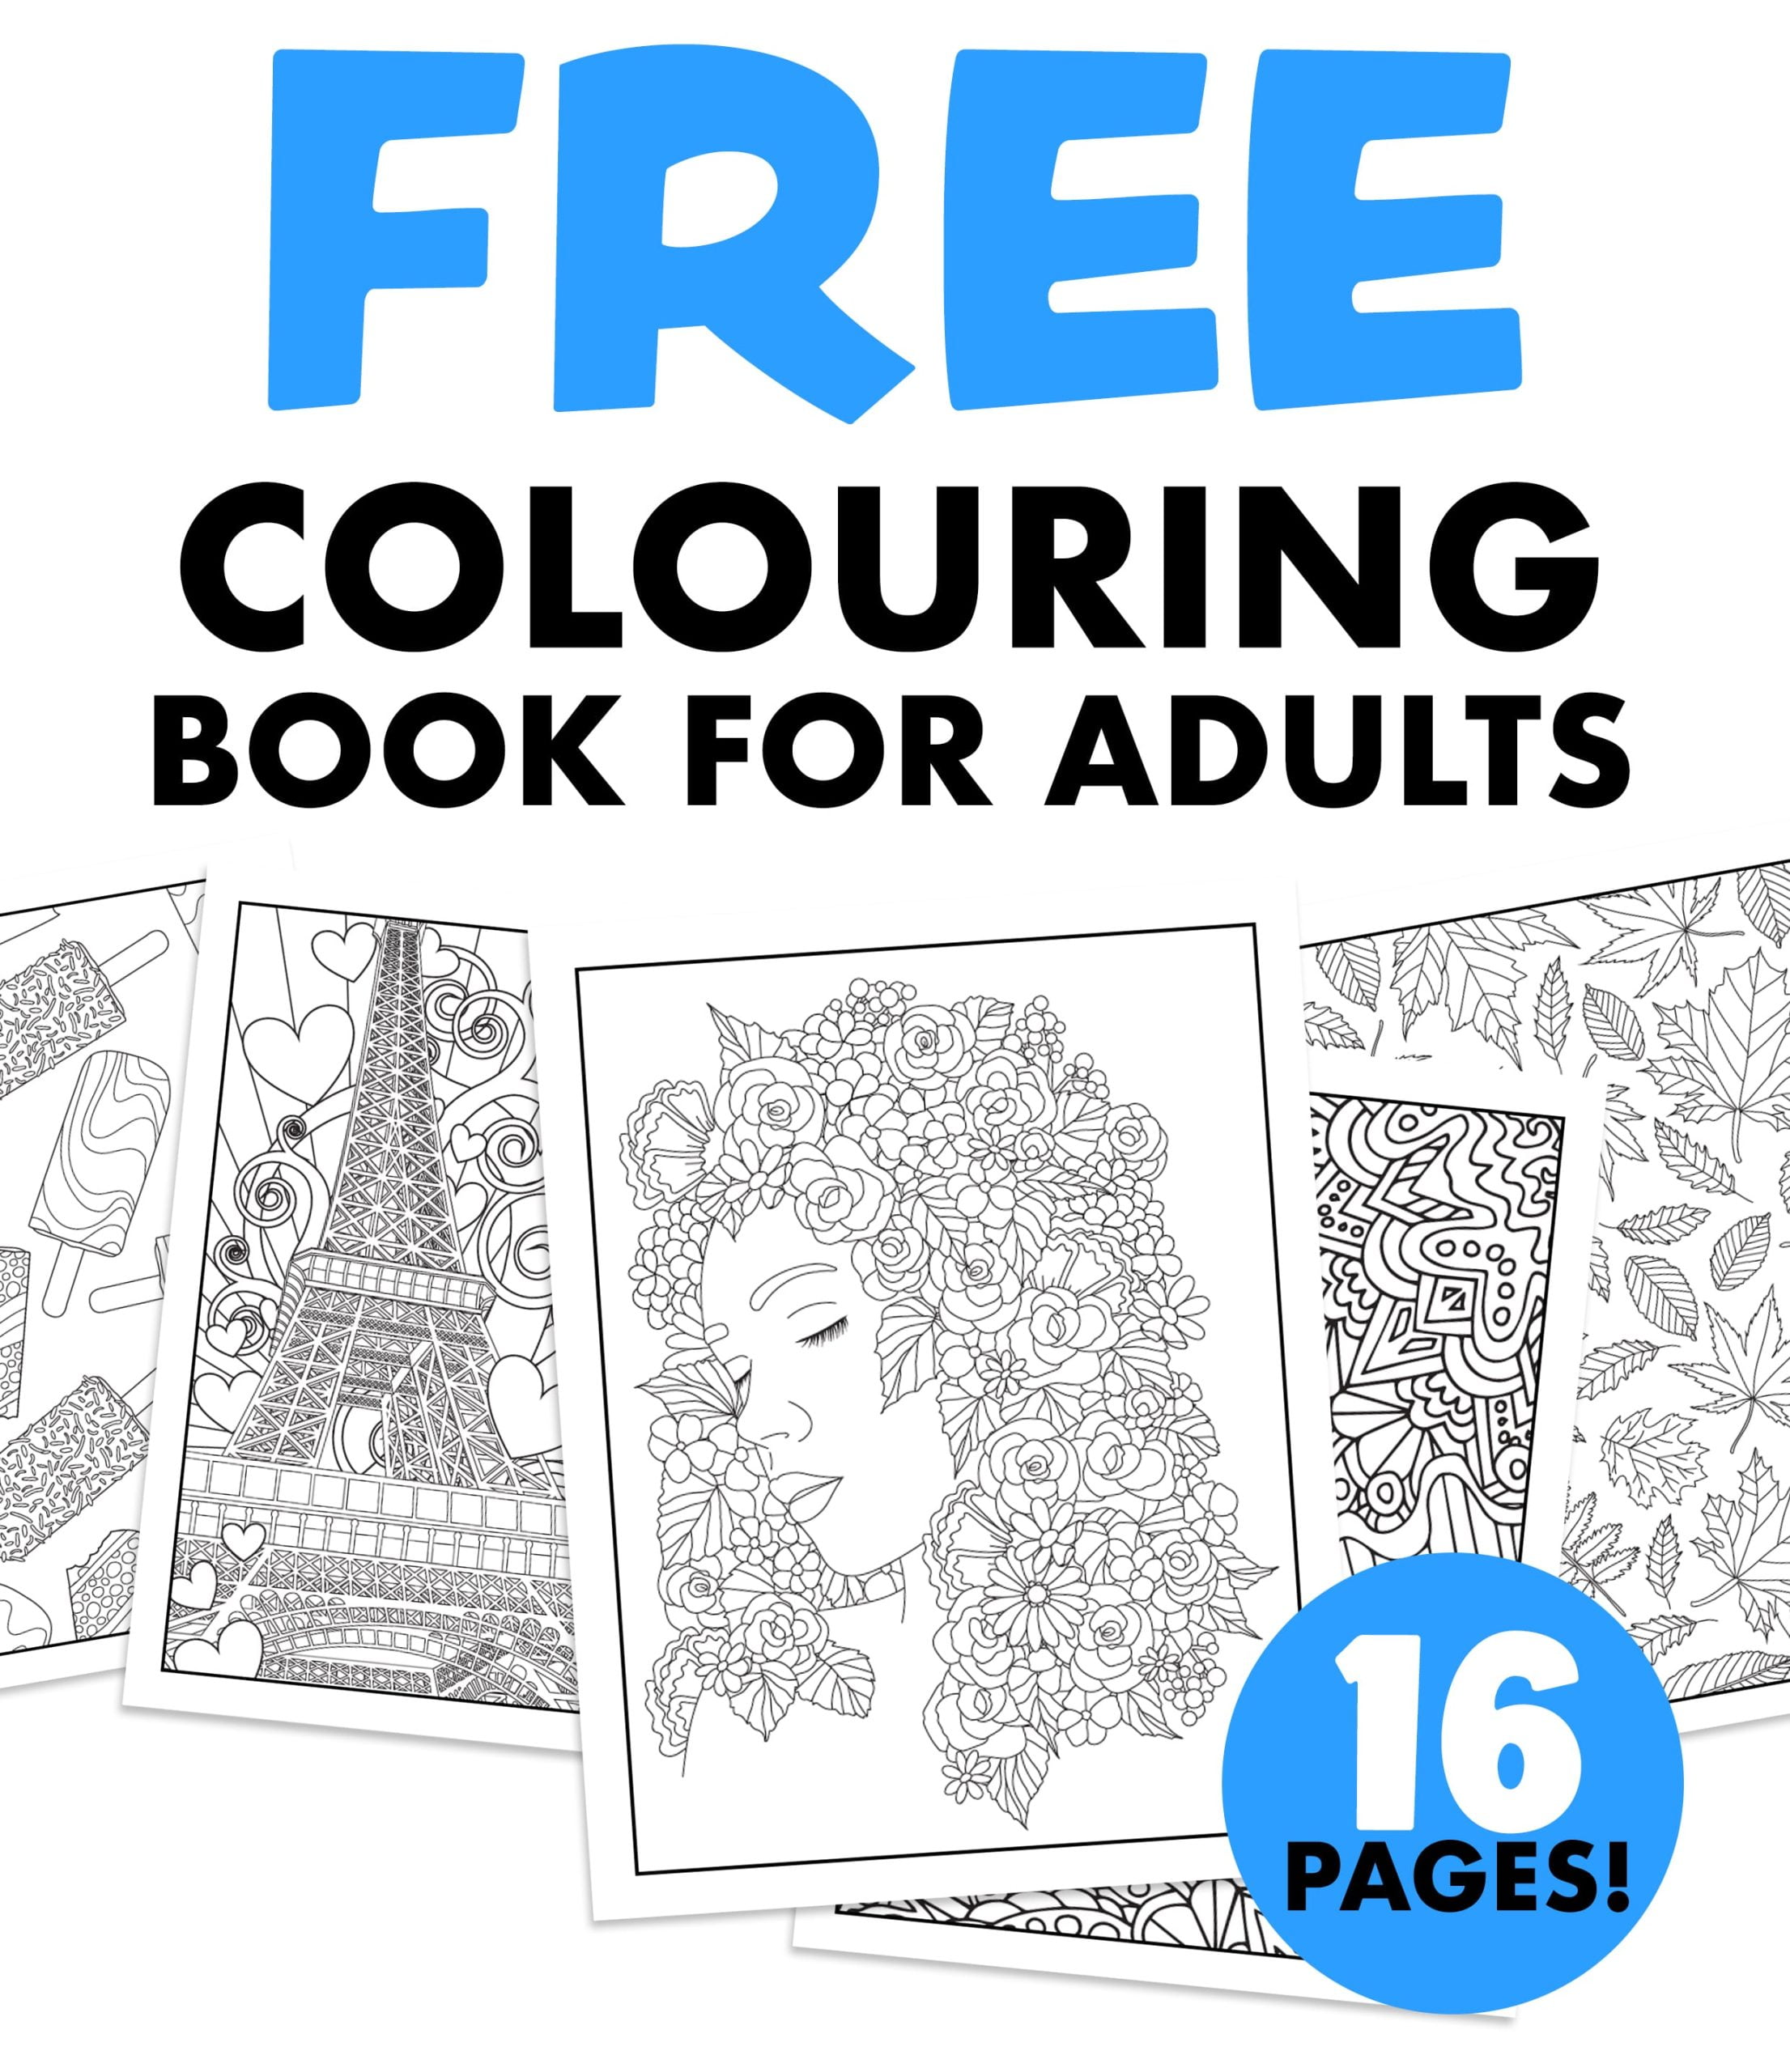 marker-coloring-page-sarah-renae-clark - Sarah Renae Clark - Coloring Book  Artist and Designer